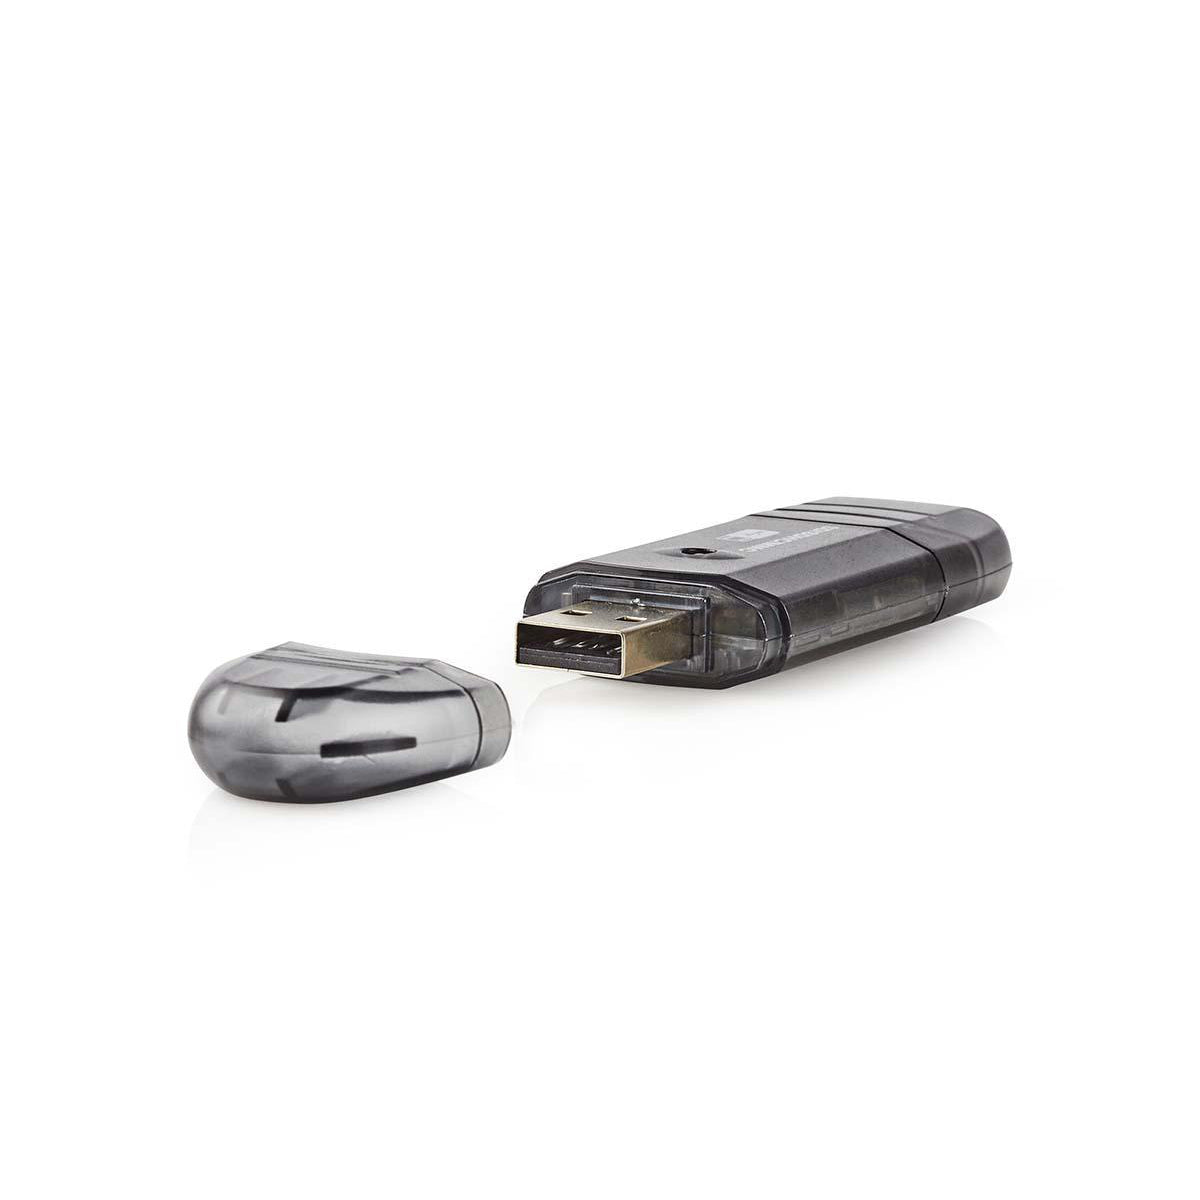 Kartenleser | MMC / SD / SDHC | USB 2.0